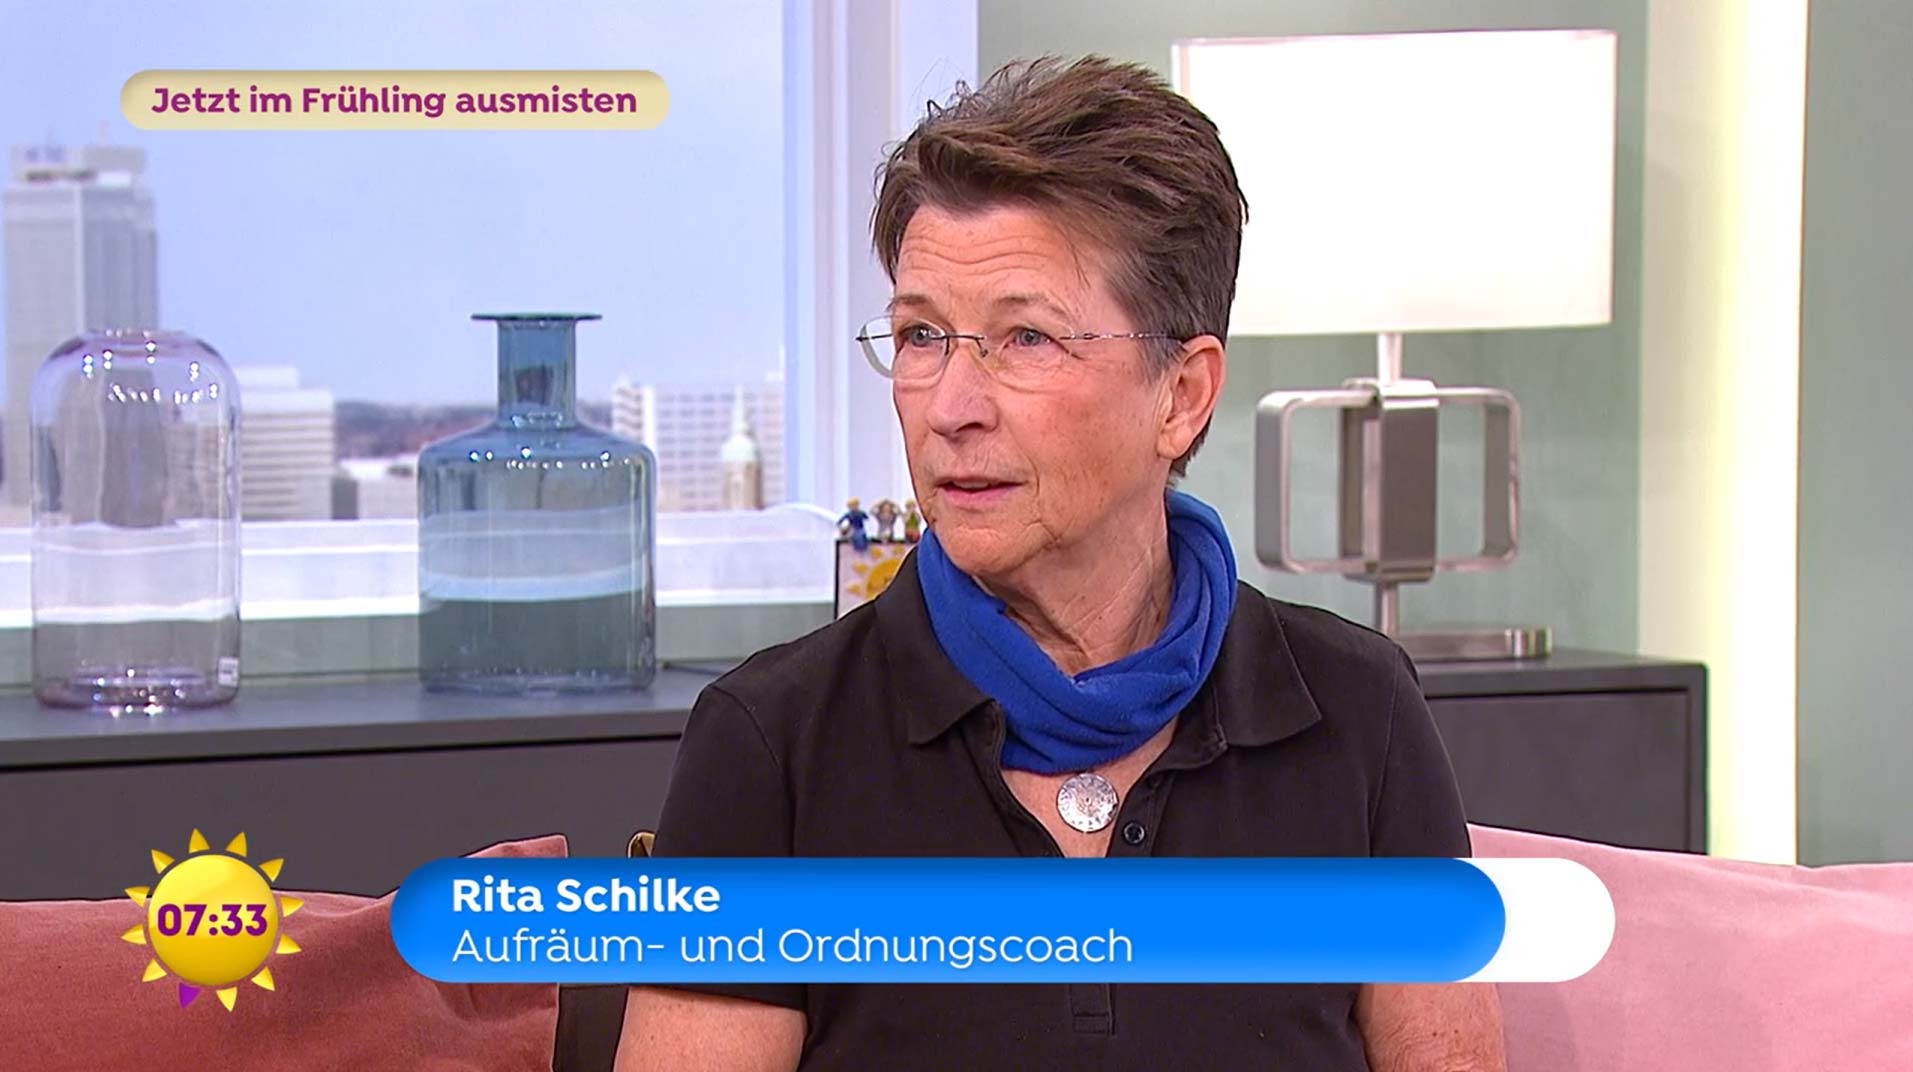 Ordnungscoach und Aufräumcoach Rita Schilke bei Sat.1 im Gespräch